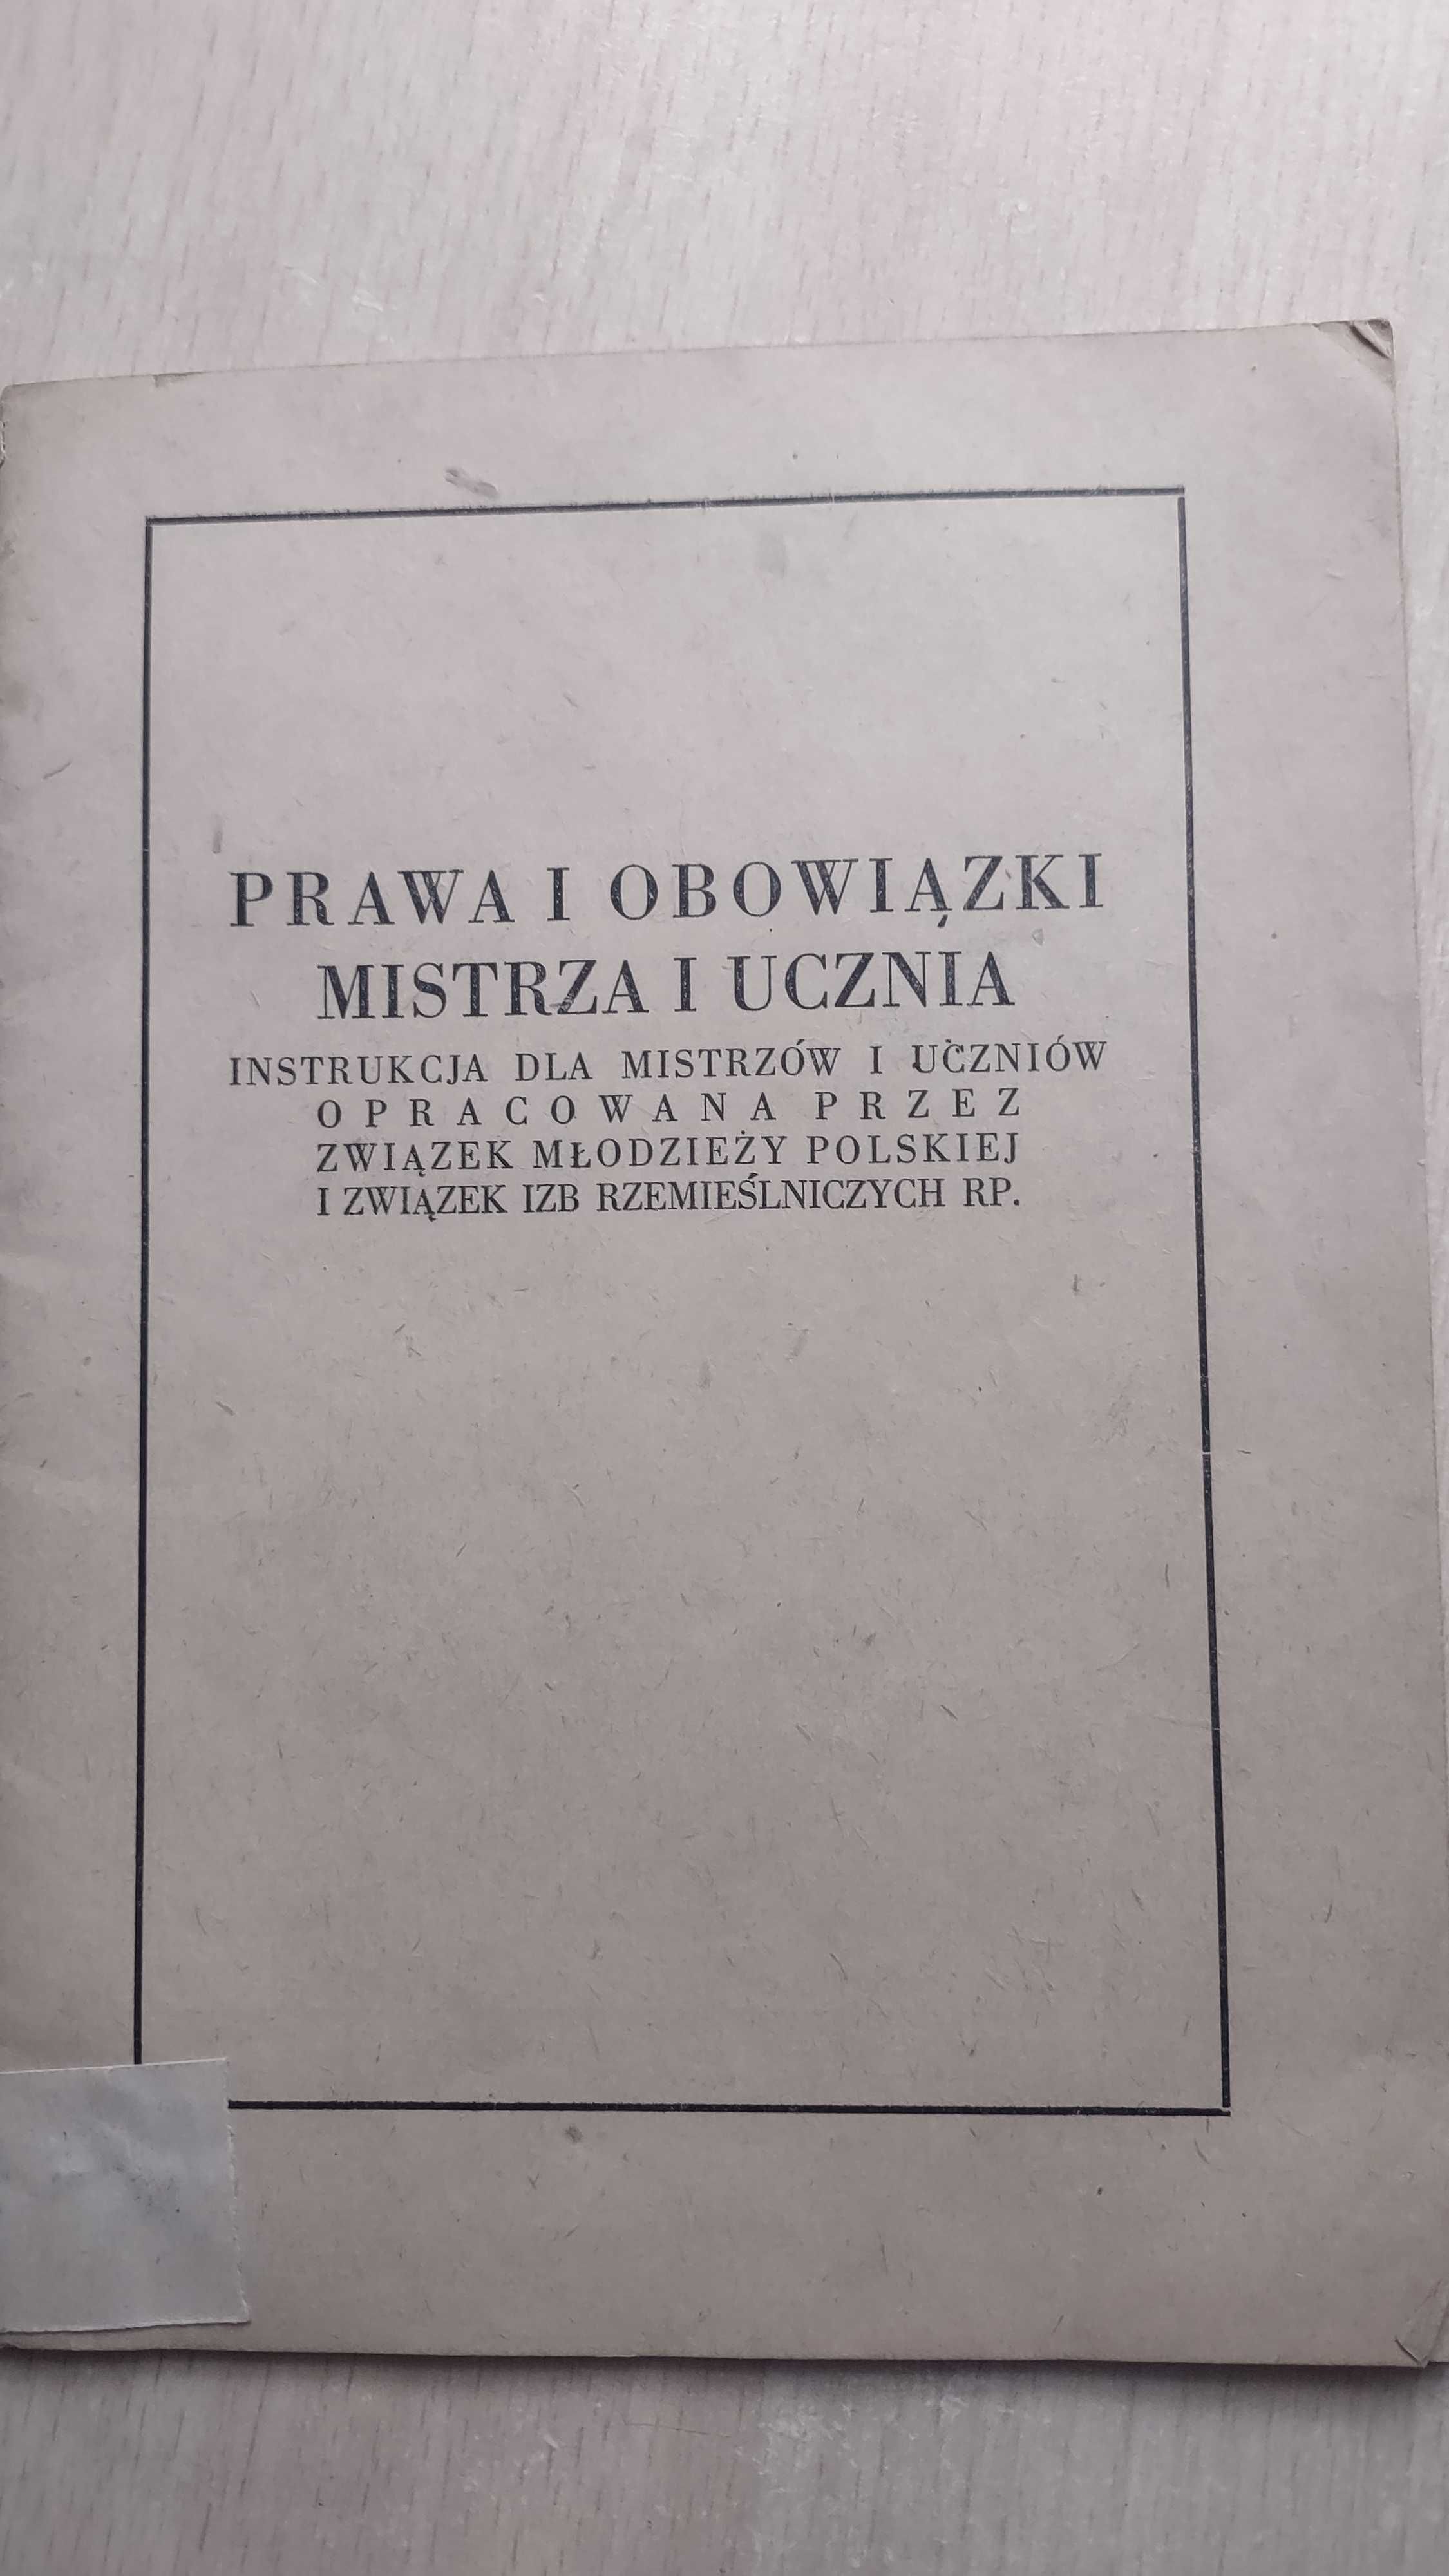 dokument -instrukcja dla mistrza i ucznia 1949r.